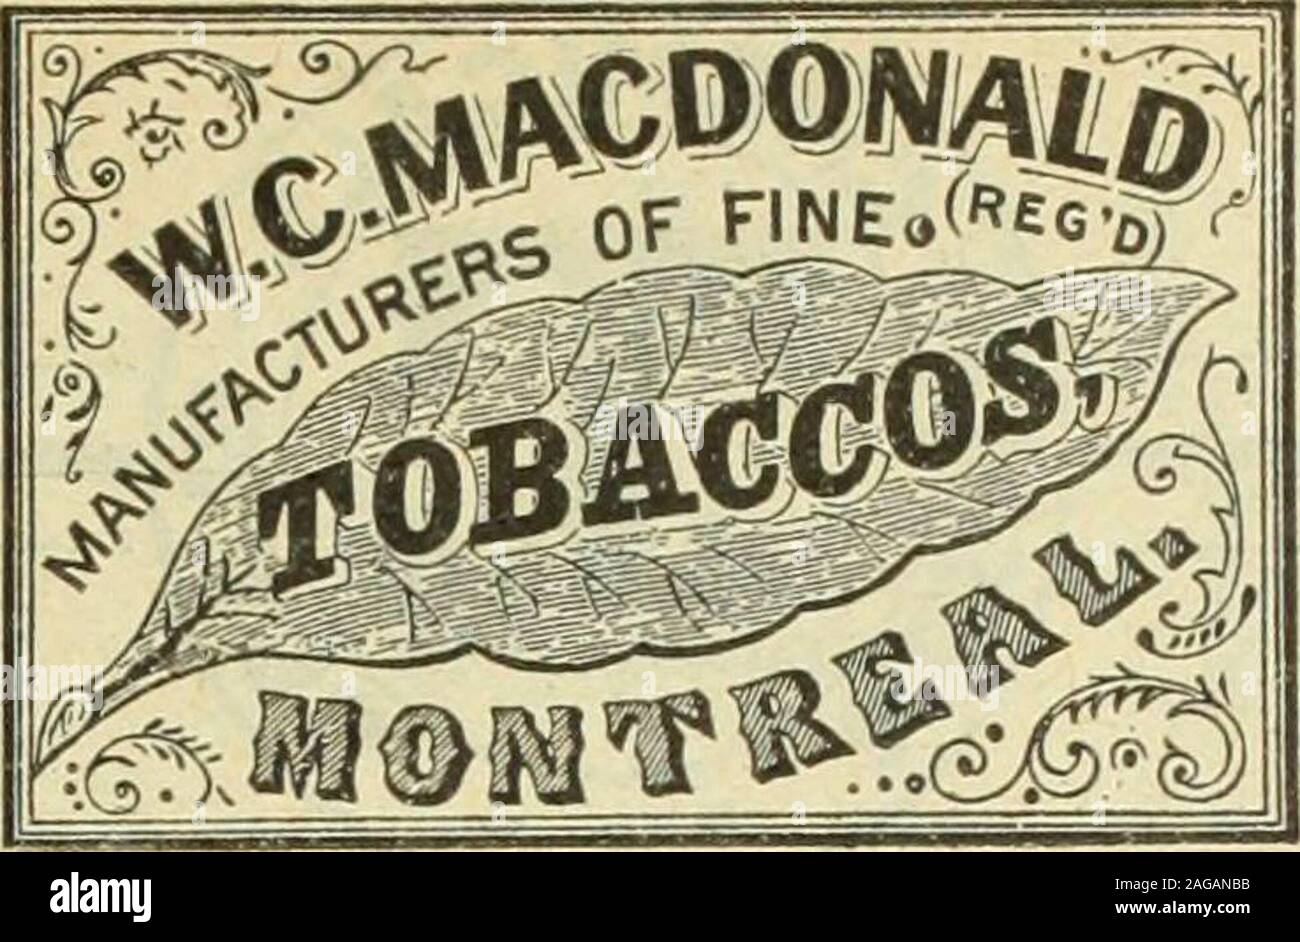 . Kanadische Lebensmittelhändler Januar-März 1919. Connors Bros., Begrenzte schwarze Hafen, ANMERKUNG: Lizenz Nr. 1-603 // jede Werbung Interessen yon, es reißen jetzt heraus, und legen Sie mit Buchstaben, die beantwortet werden sollen. Februar 7, 1919 C A N A T) IAN GRO C E R *55. Suchen Sie die Macdonald Marke jedes Paket wir Schiff trägt den oben genannten Marke - es ist Ihre Garantie, dass die tobaccowas Hergestellt von W. C. Macdonald Eingetragenes, über 60 Jahren etabliert. PLUG RAUCHEN BRITISCHEN CONSOLSINGOTS (groben) BRIERINDEX PLUG KAUEN PRINZ VON WALES NAPOLEON CROWN BLACK ROD (Twist) von führenden Großhändler verteilt. W. C MACDONA Stockfoto